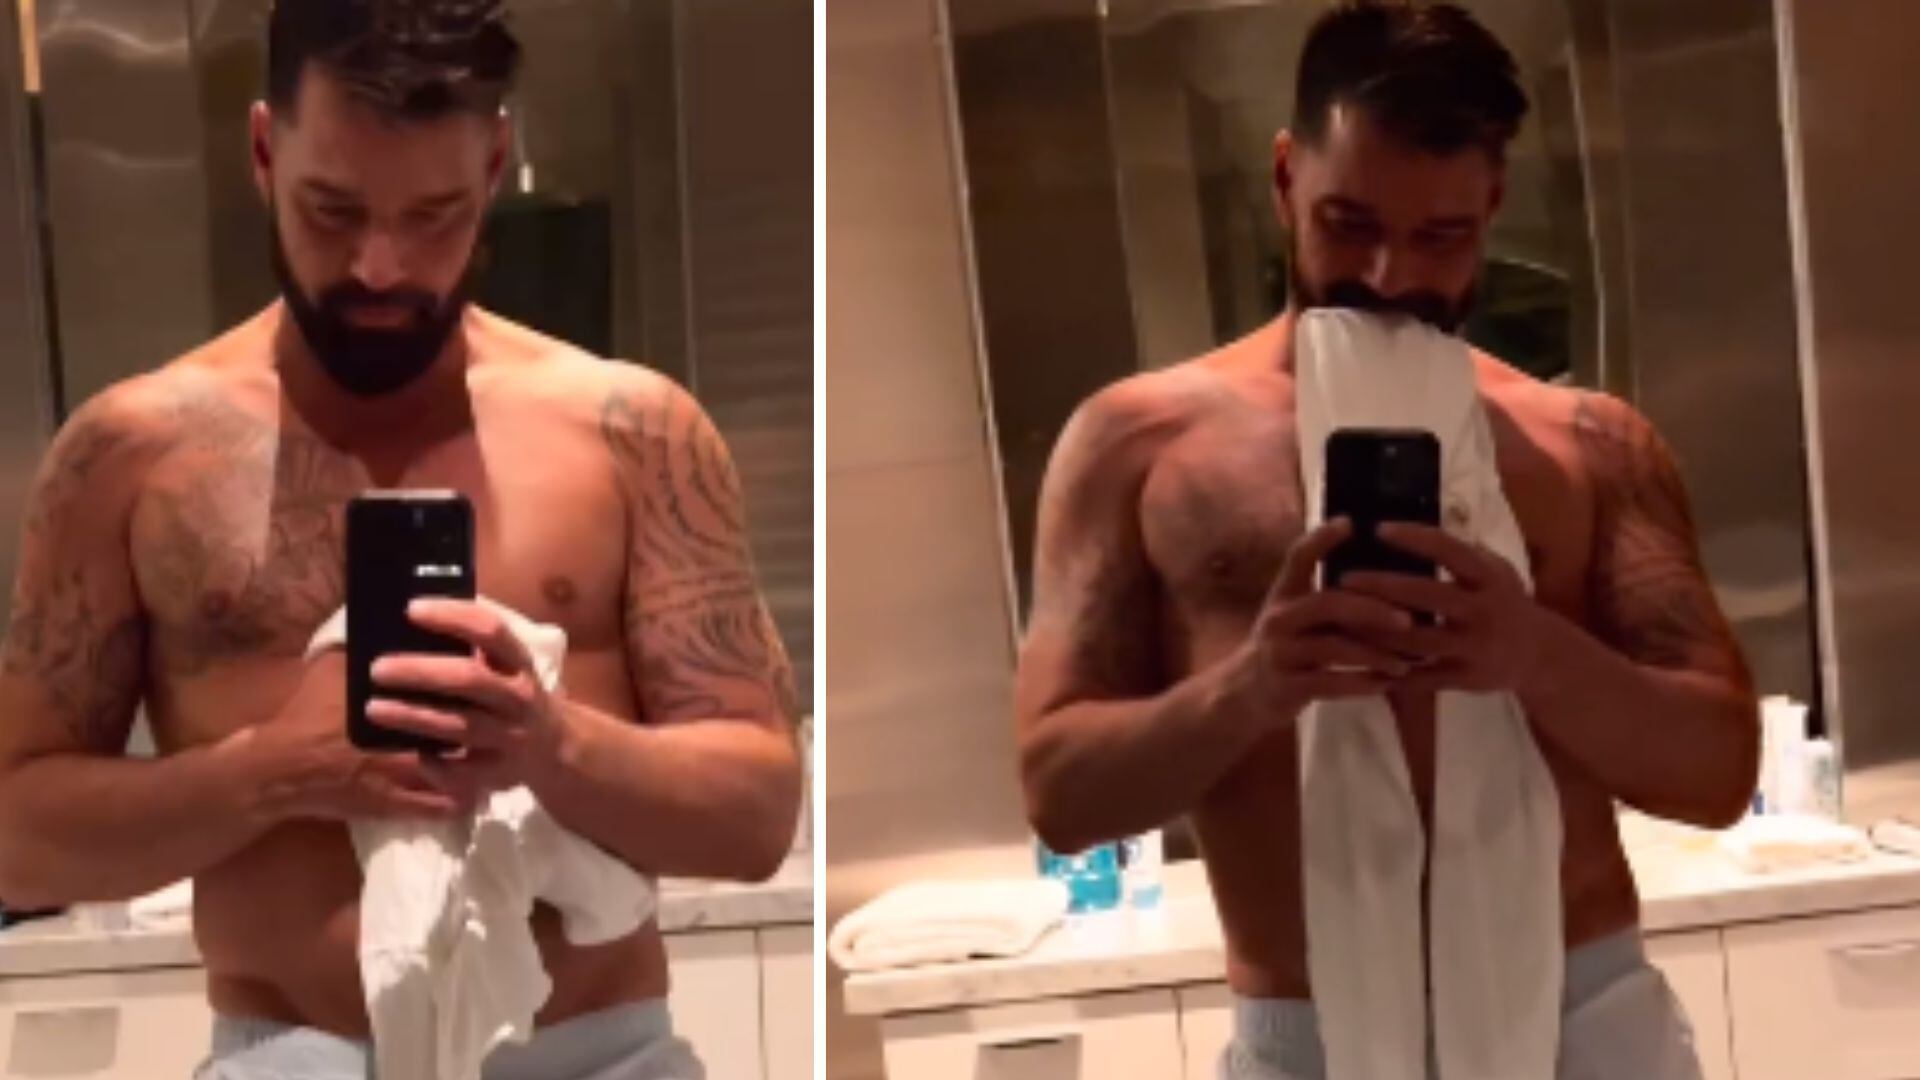 Ricky Martin publicó un video semidesnudo y causó furor en las redes